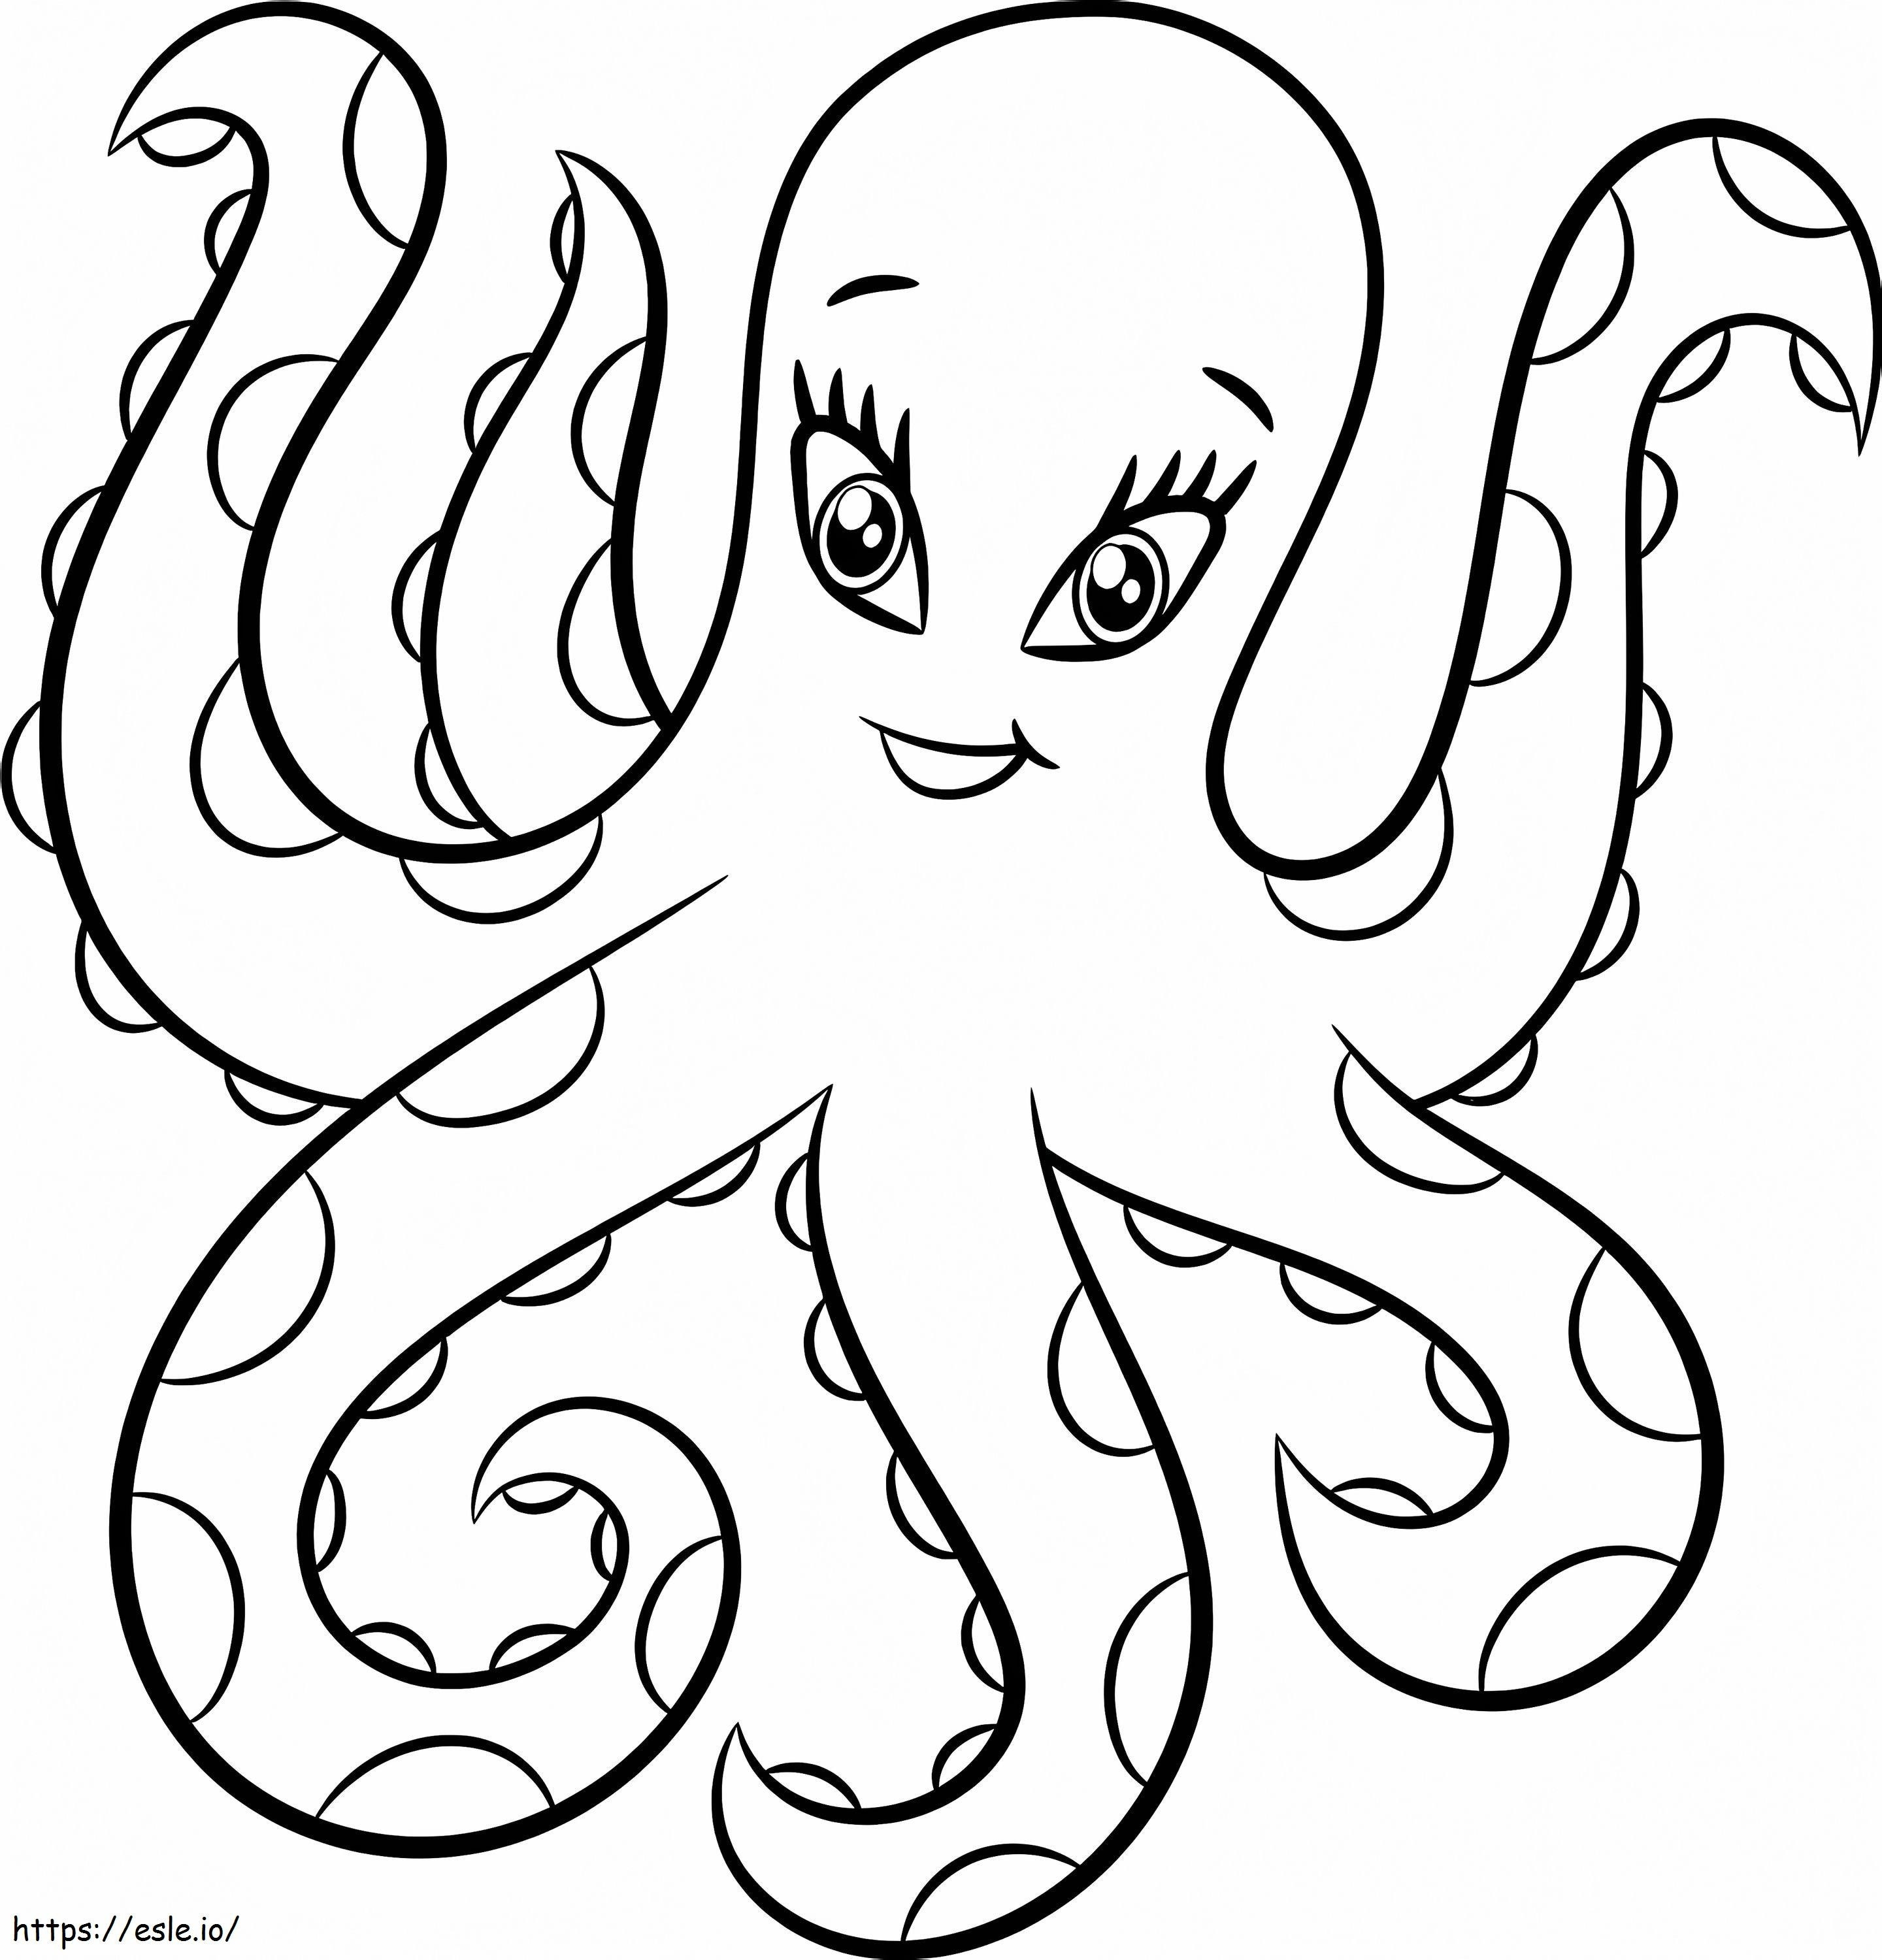 Cartoon Octopus coloring page